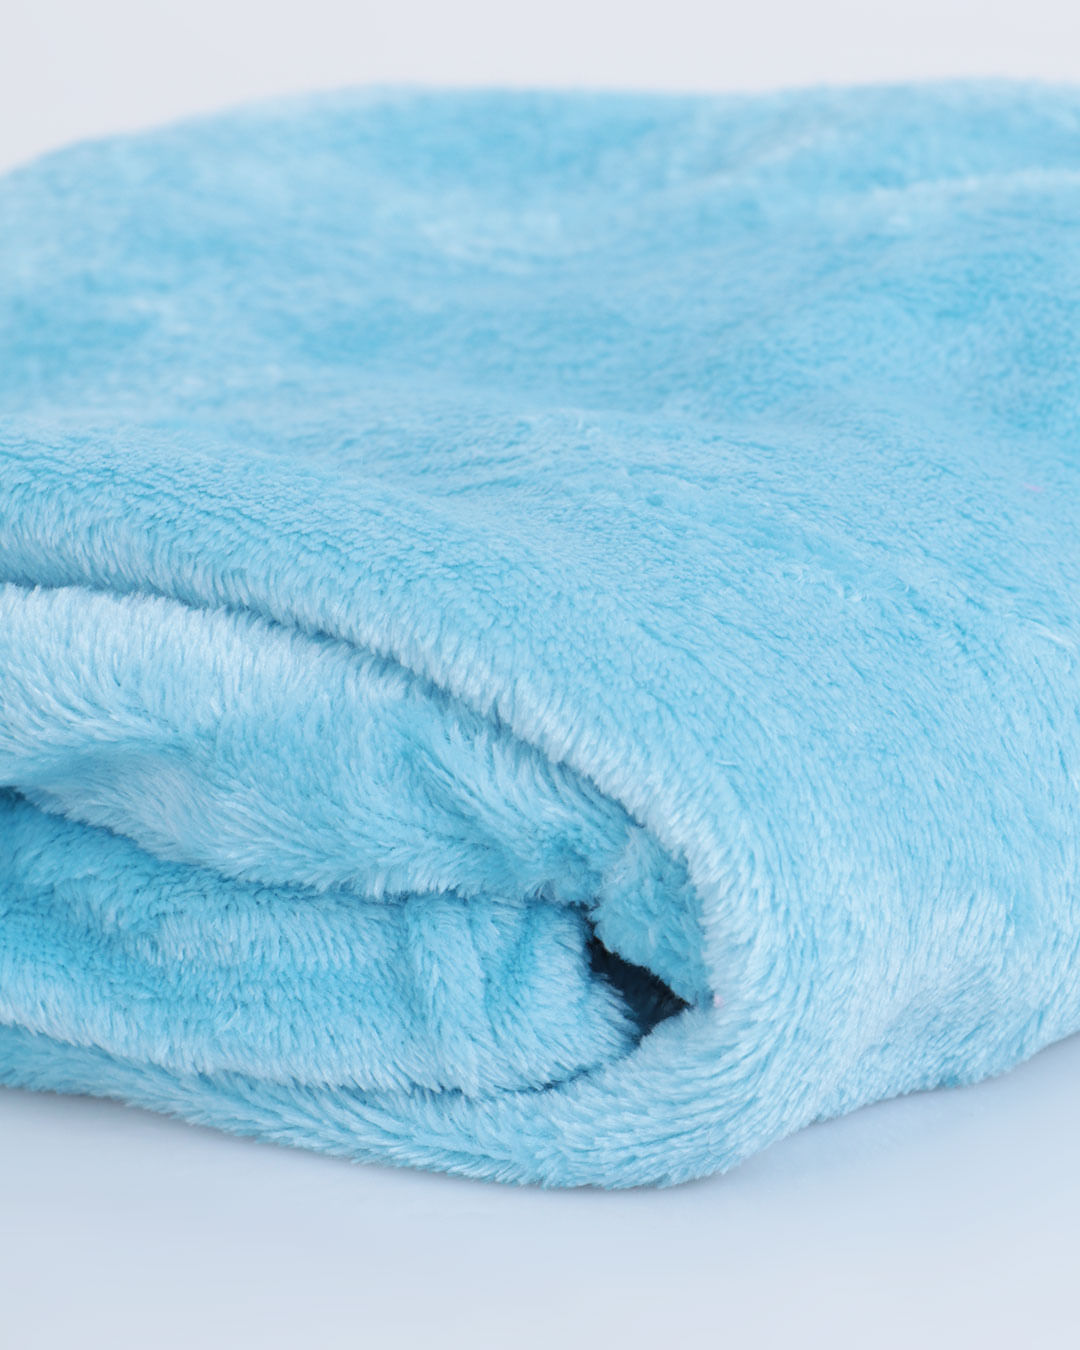 Cobertor-de-Bebe-Flannel-Lisa-Arte-e-Cazza-Azul-Claro